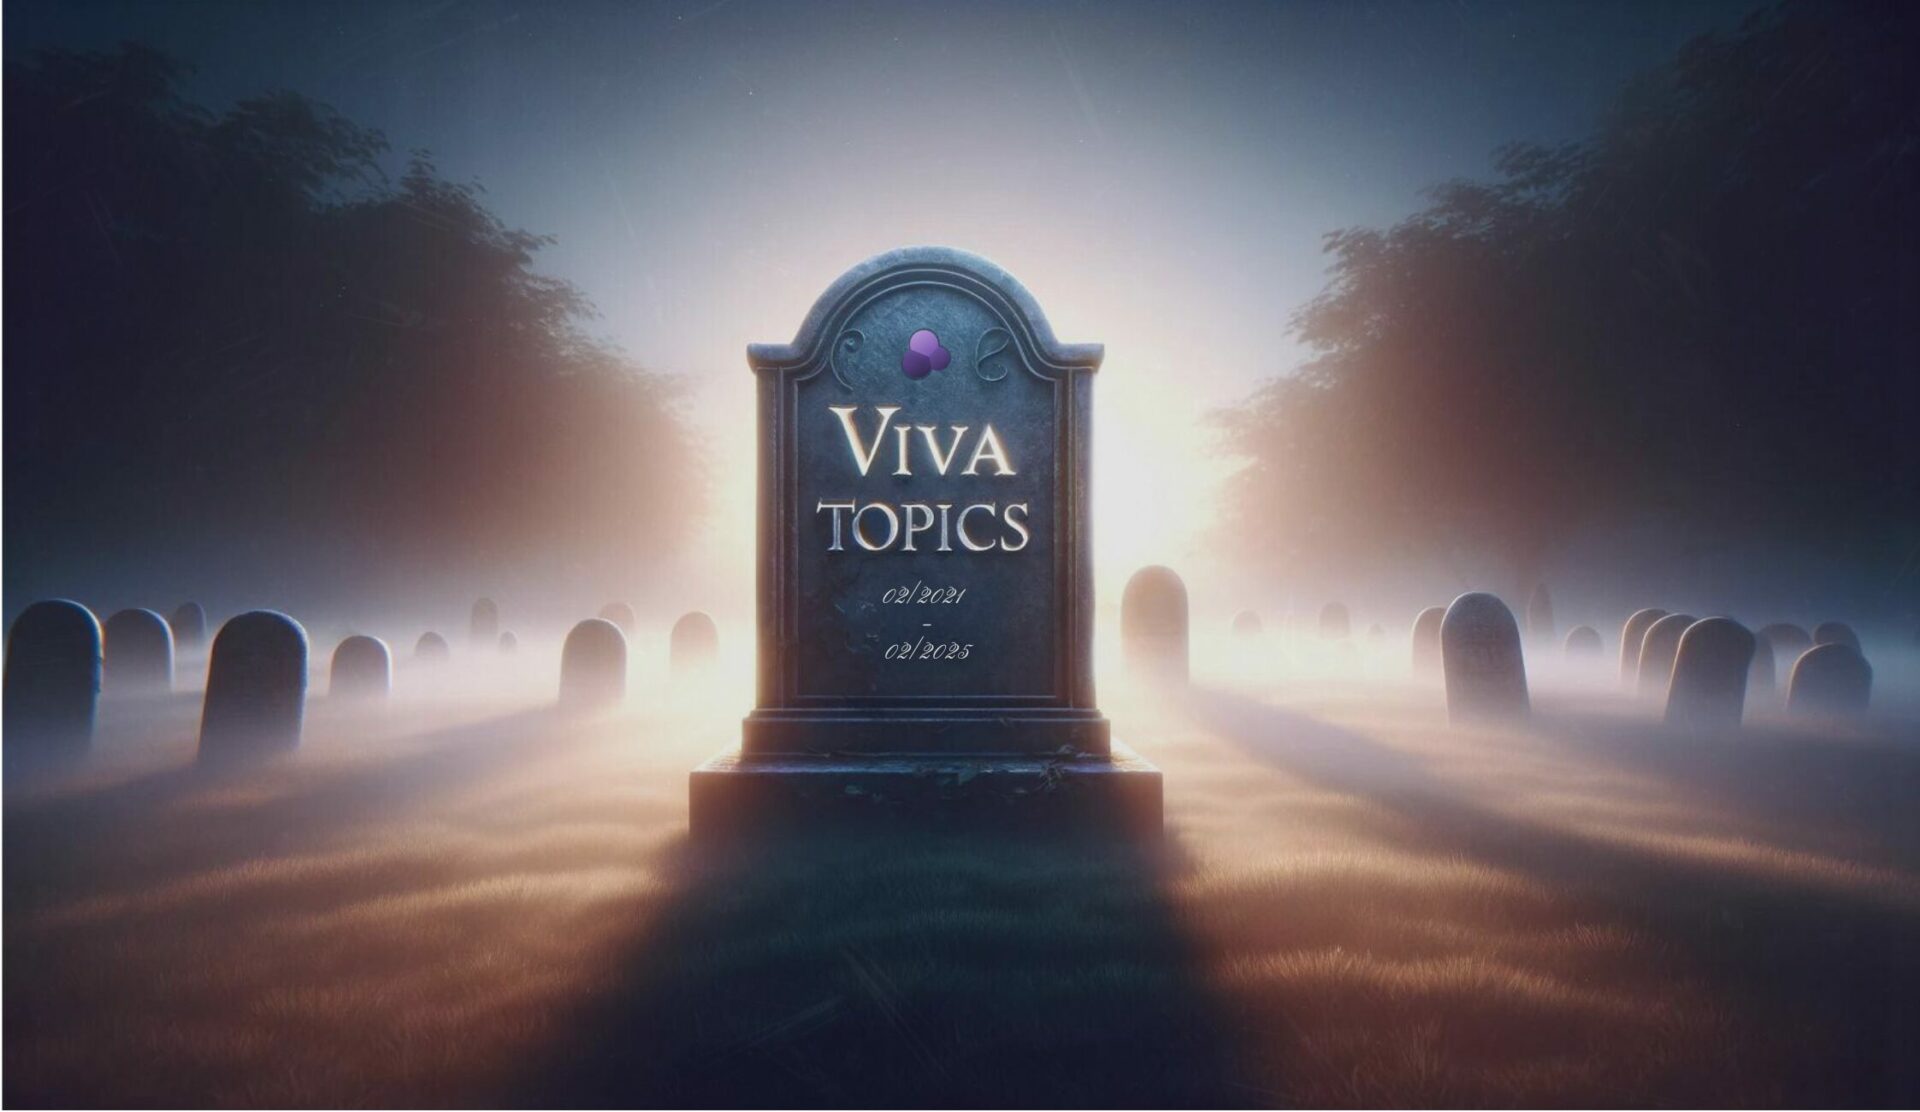 A gravestone with 'Viva Topics' written on it.